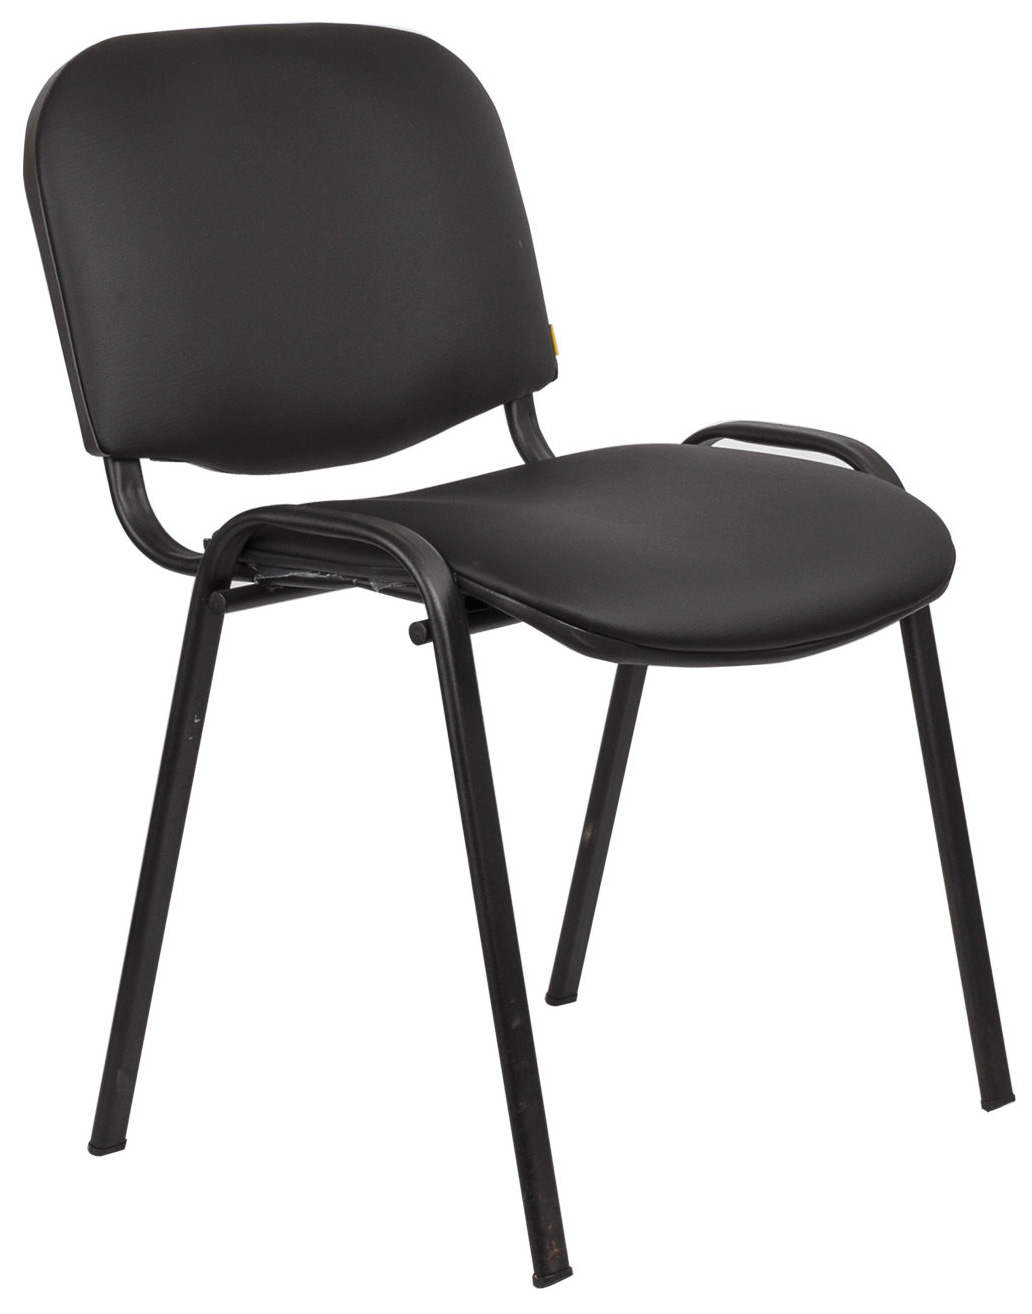 стул для посетителей изо черный ткань металл черный